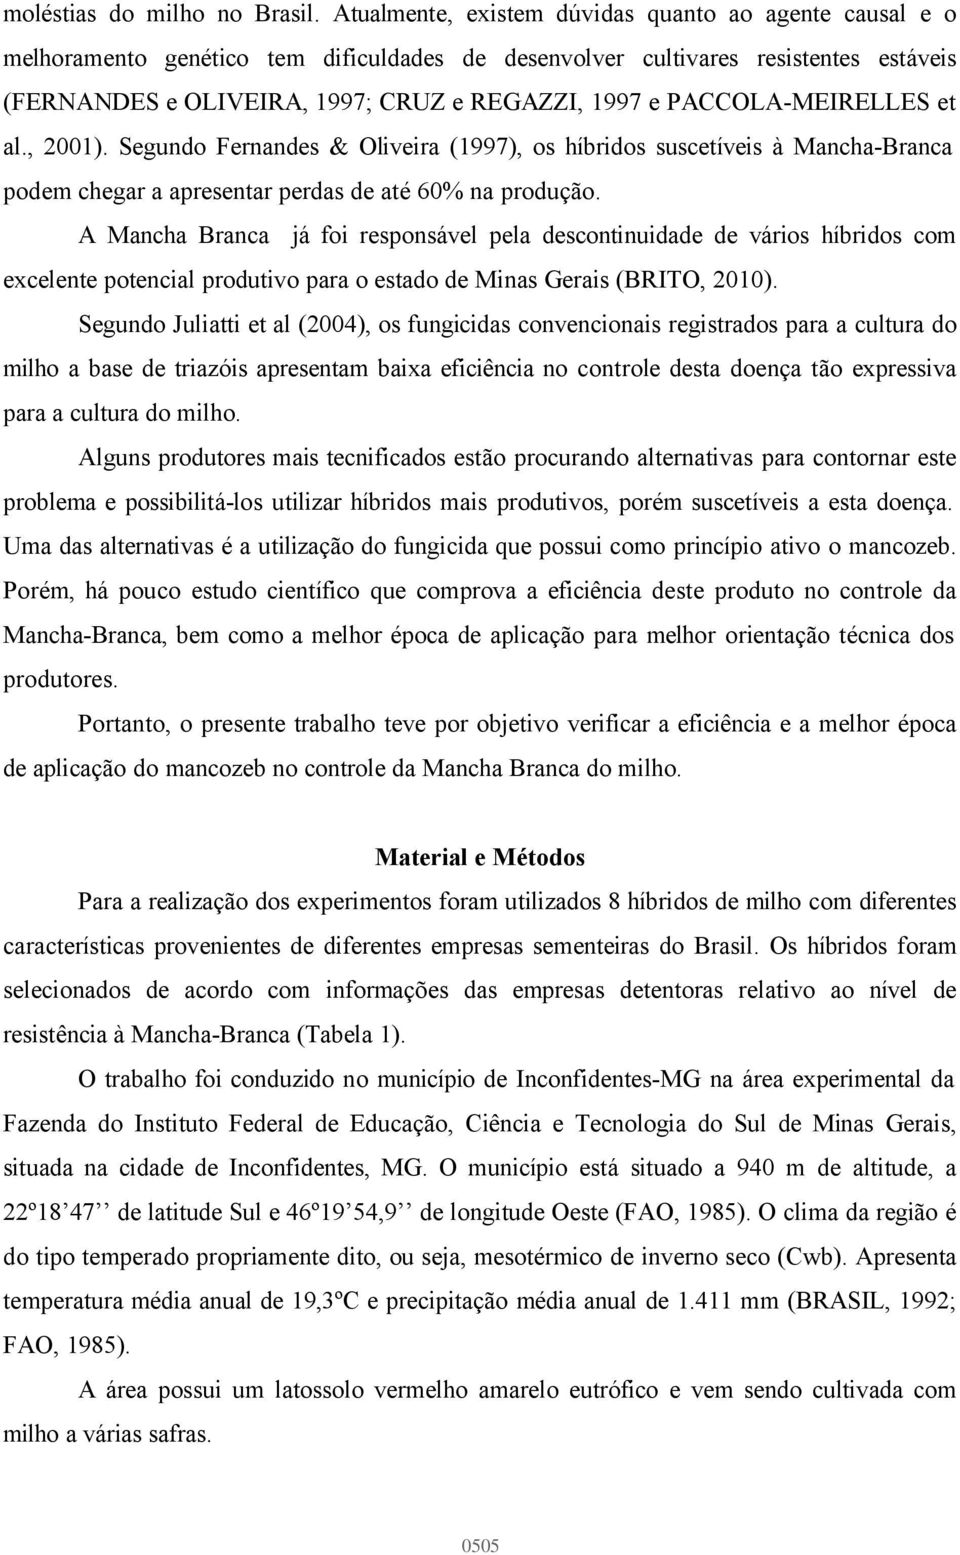 PACCOLA-MEIRELLES et al., 2001). Segundo Fernandes & Oliveira (1997), os híbridos suscetíveis à Mancha-Branca podem chegar a apresentar perdas de até 60% na produção.